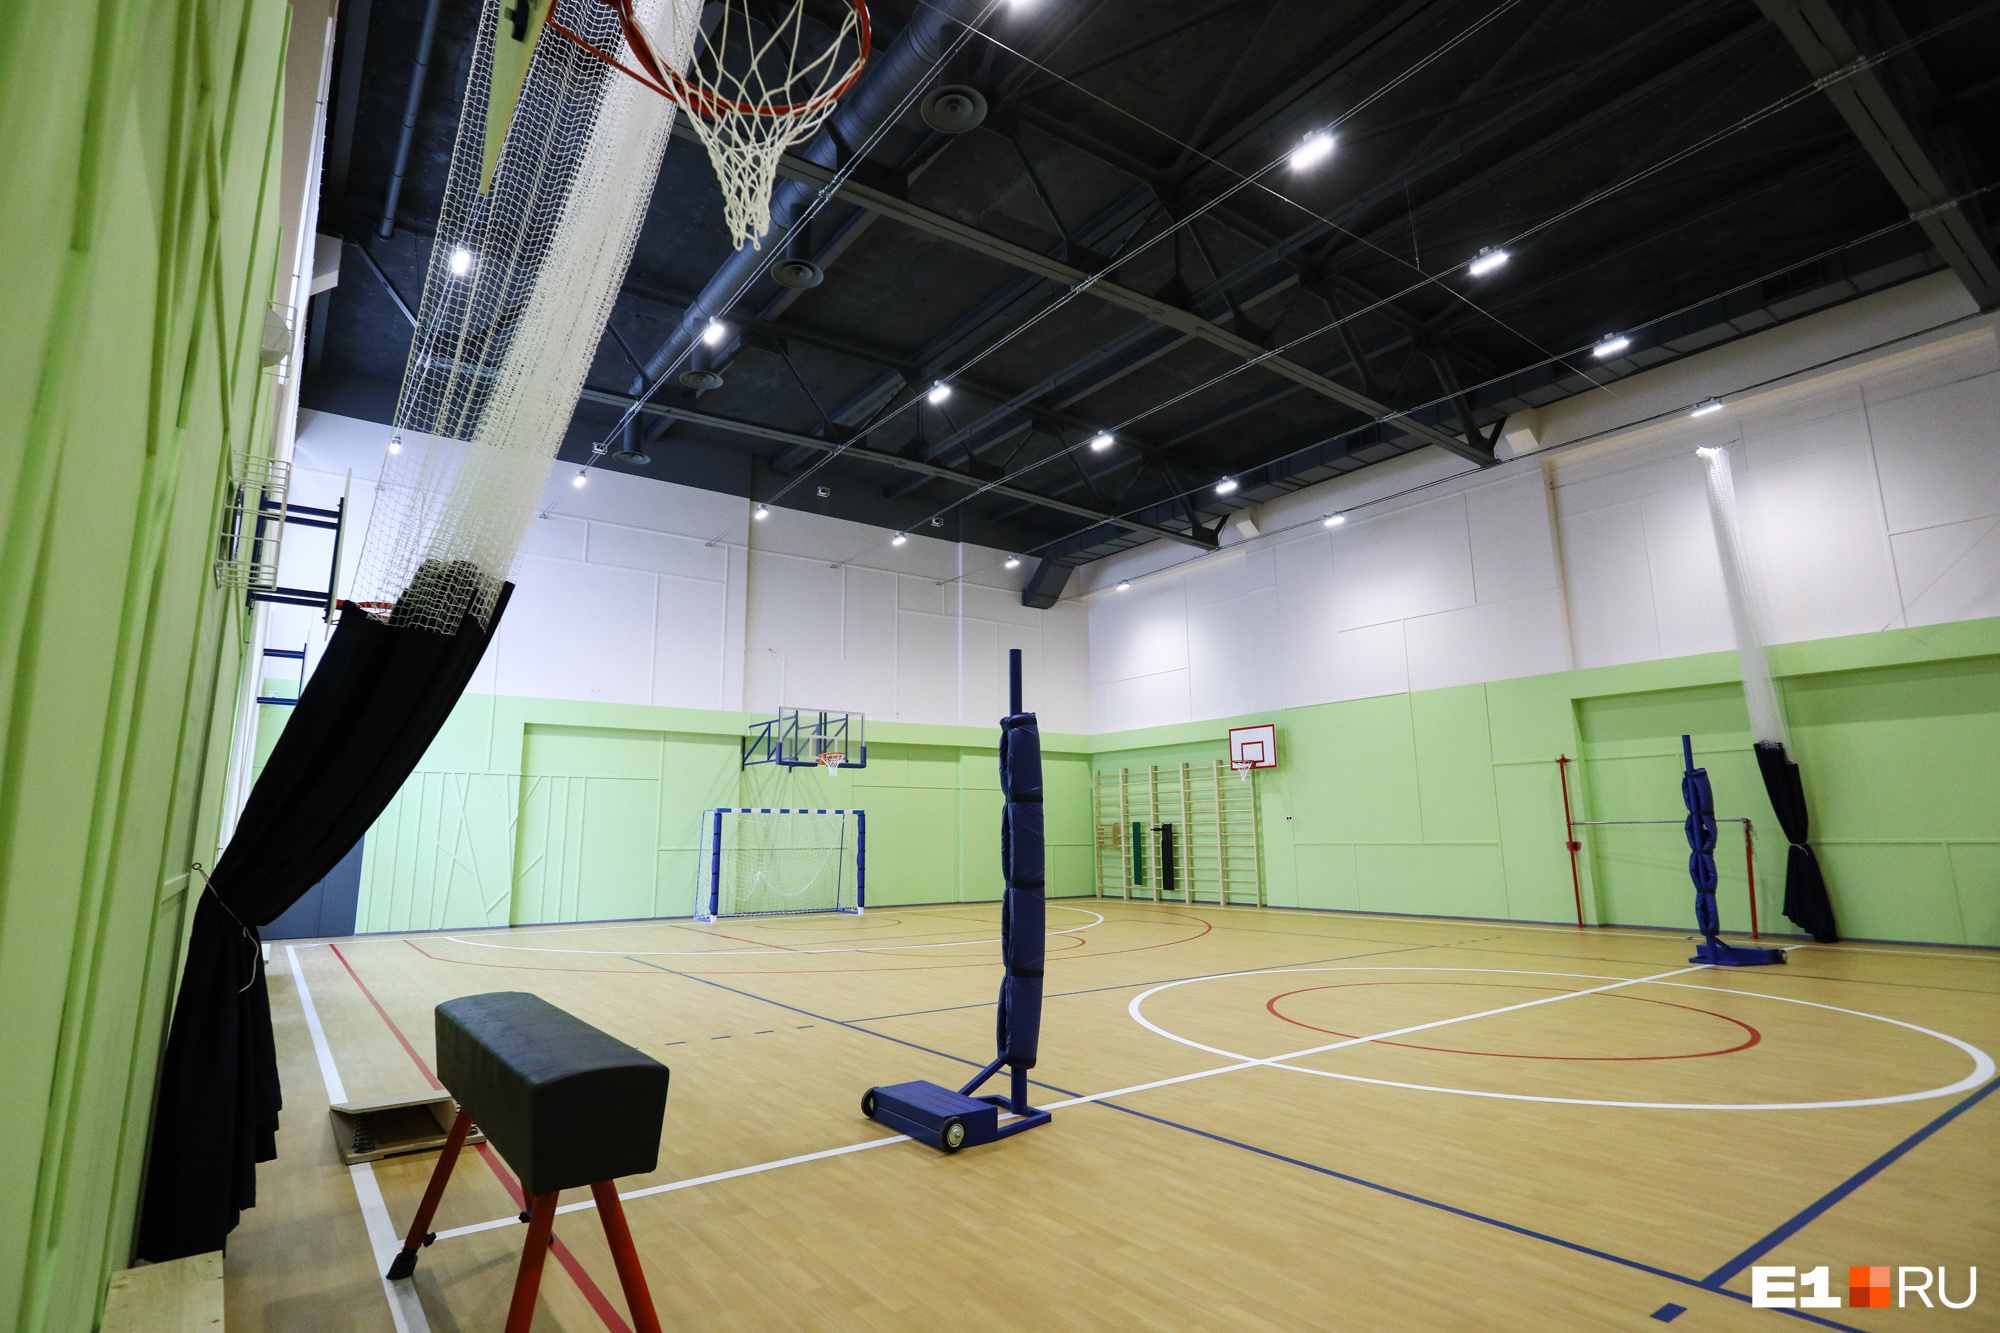 Потолок в спортзале выполнен с системой огнезащиты. Зал оснащен под волейбол, баскетбол и гандбол